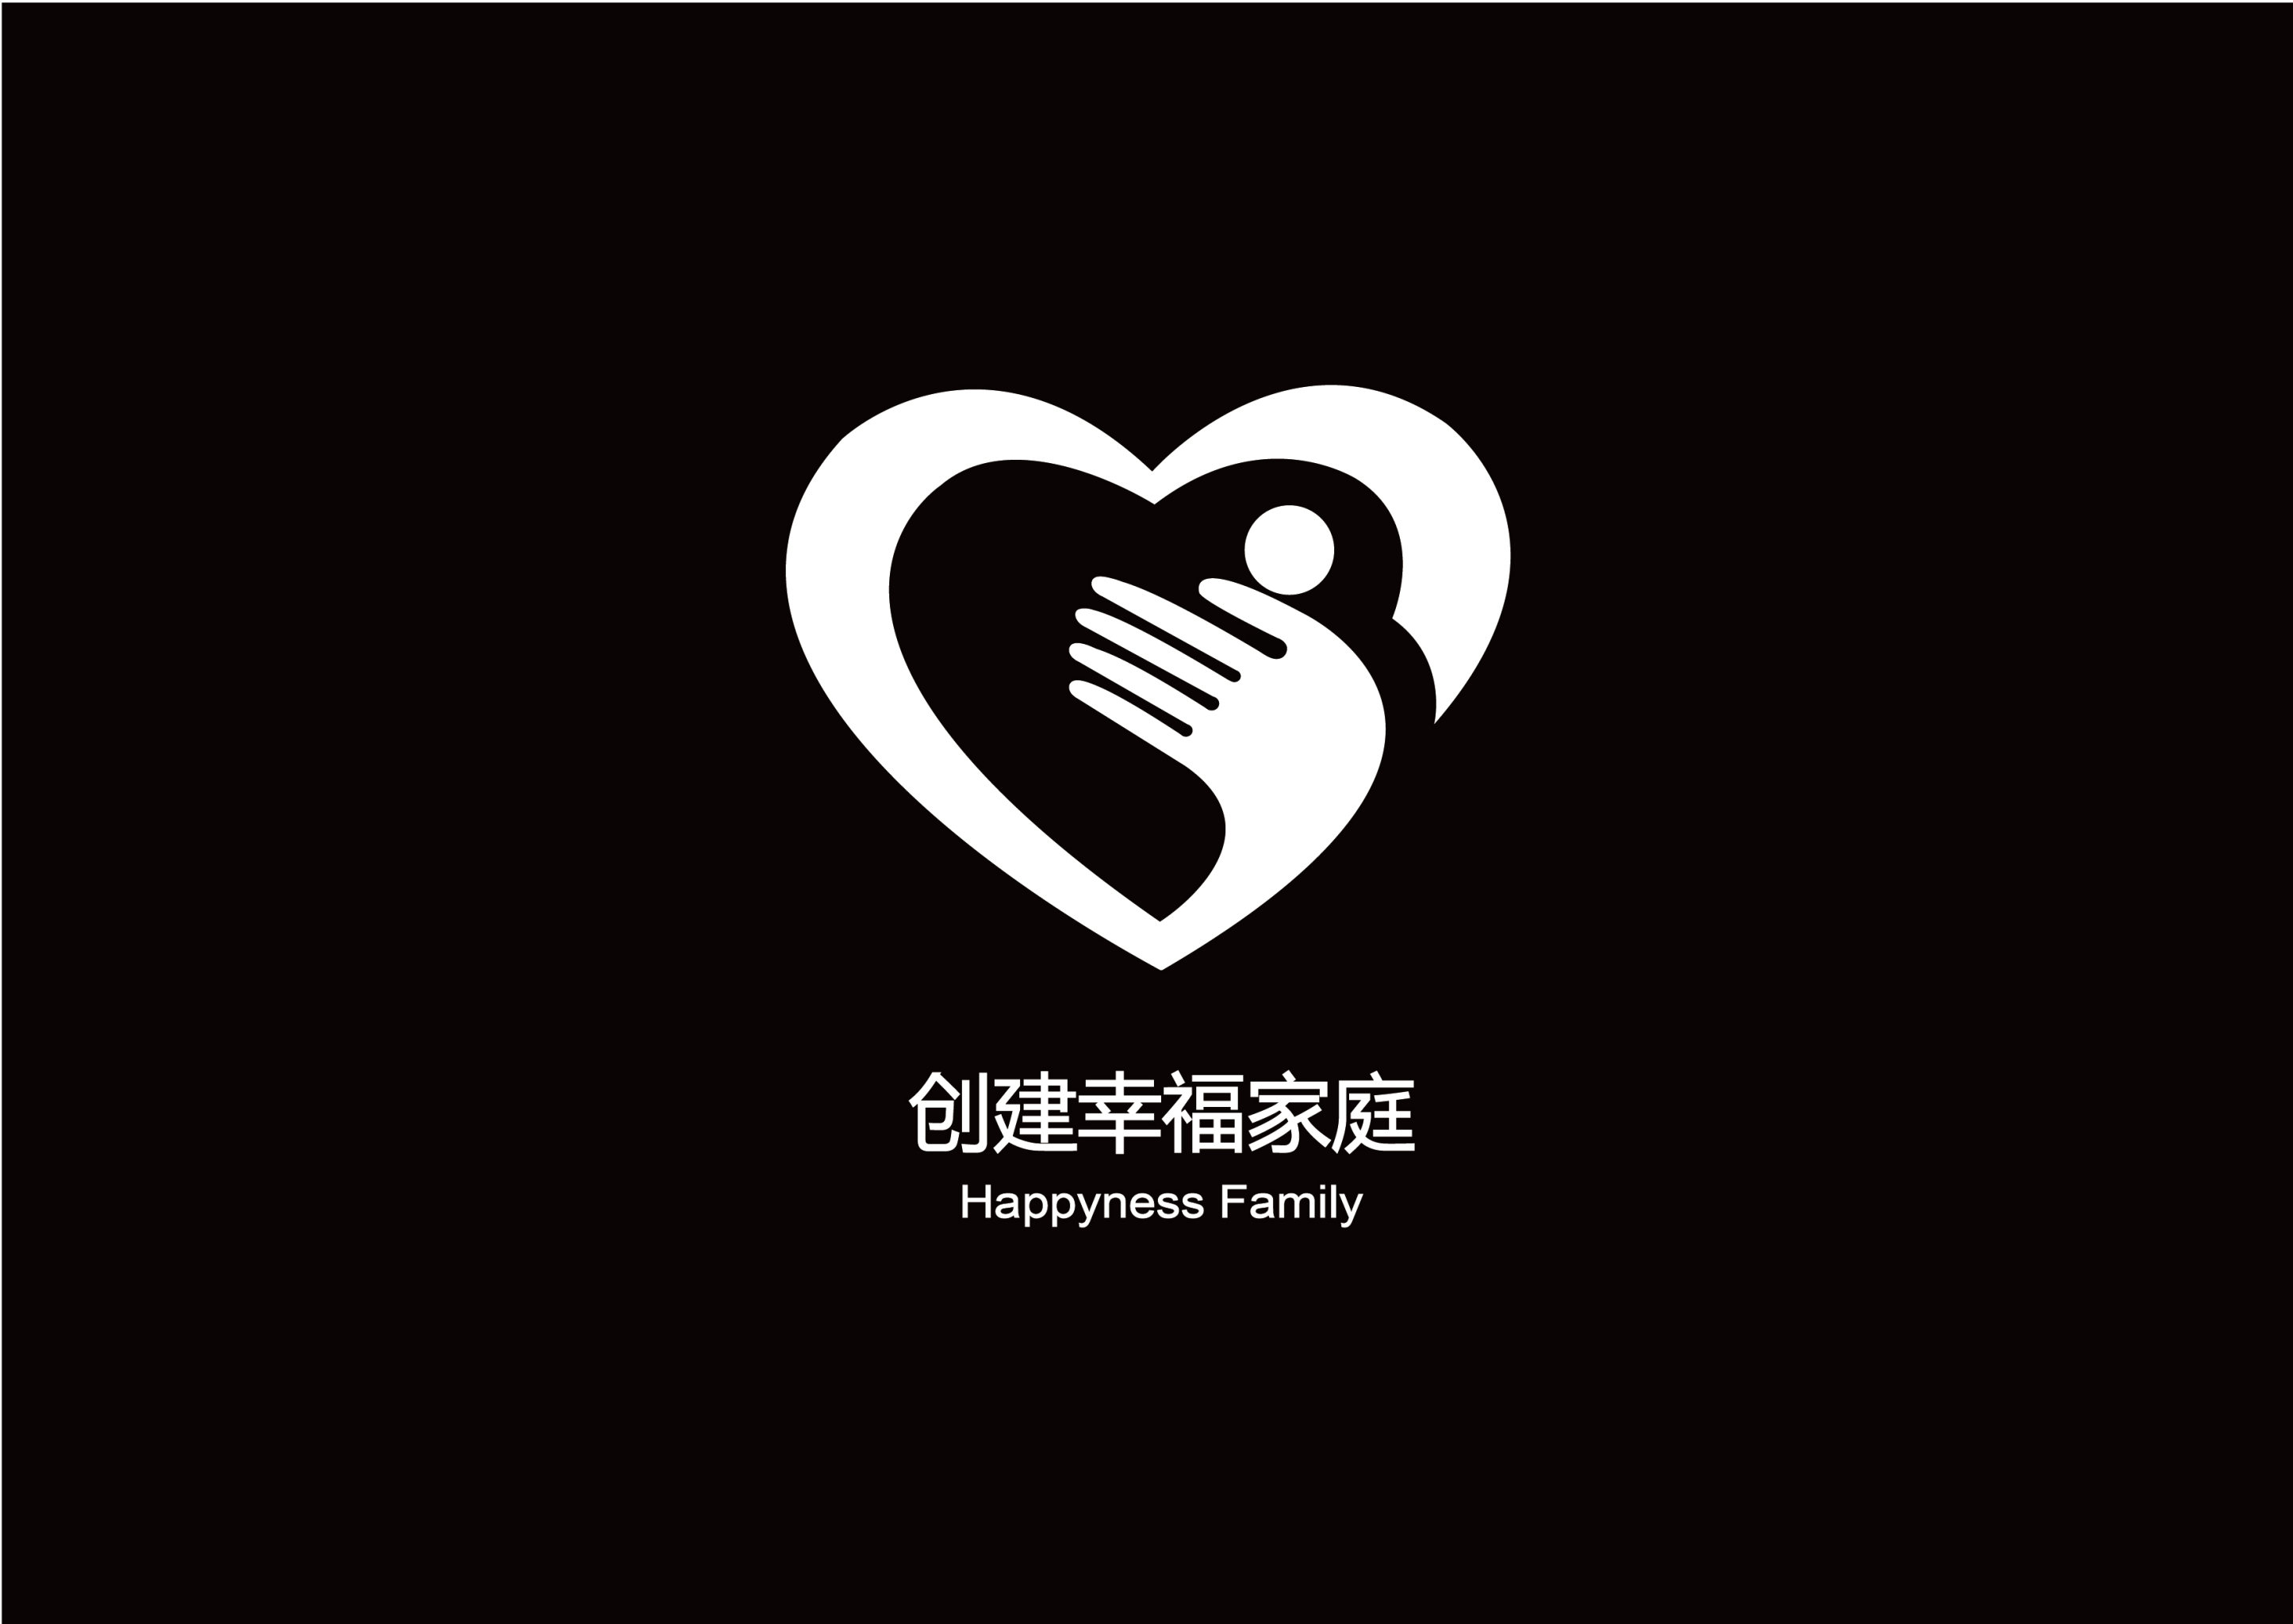 创建幸福家庭活动logo设计